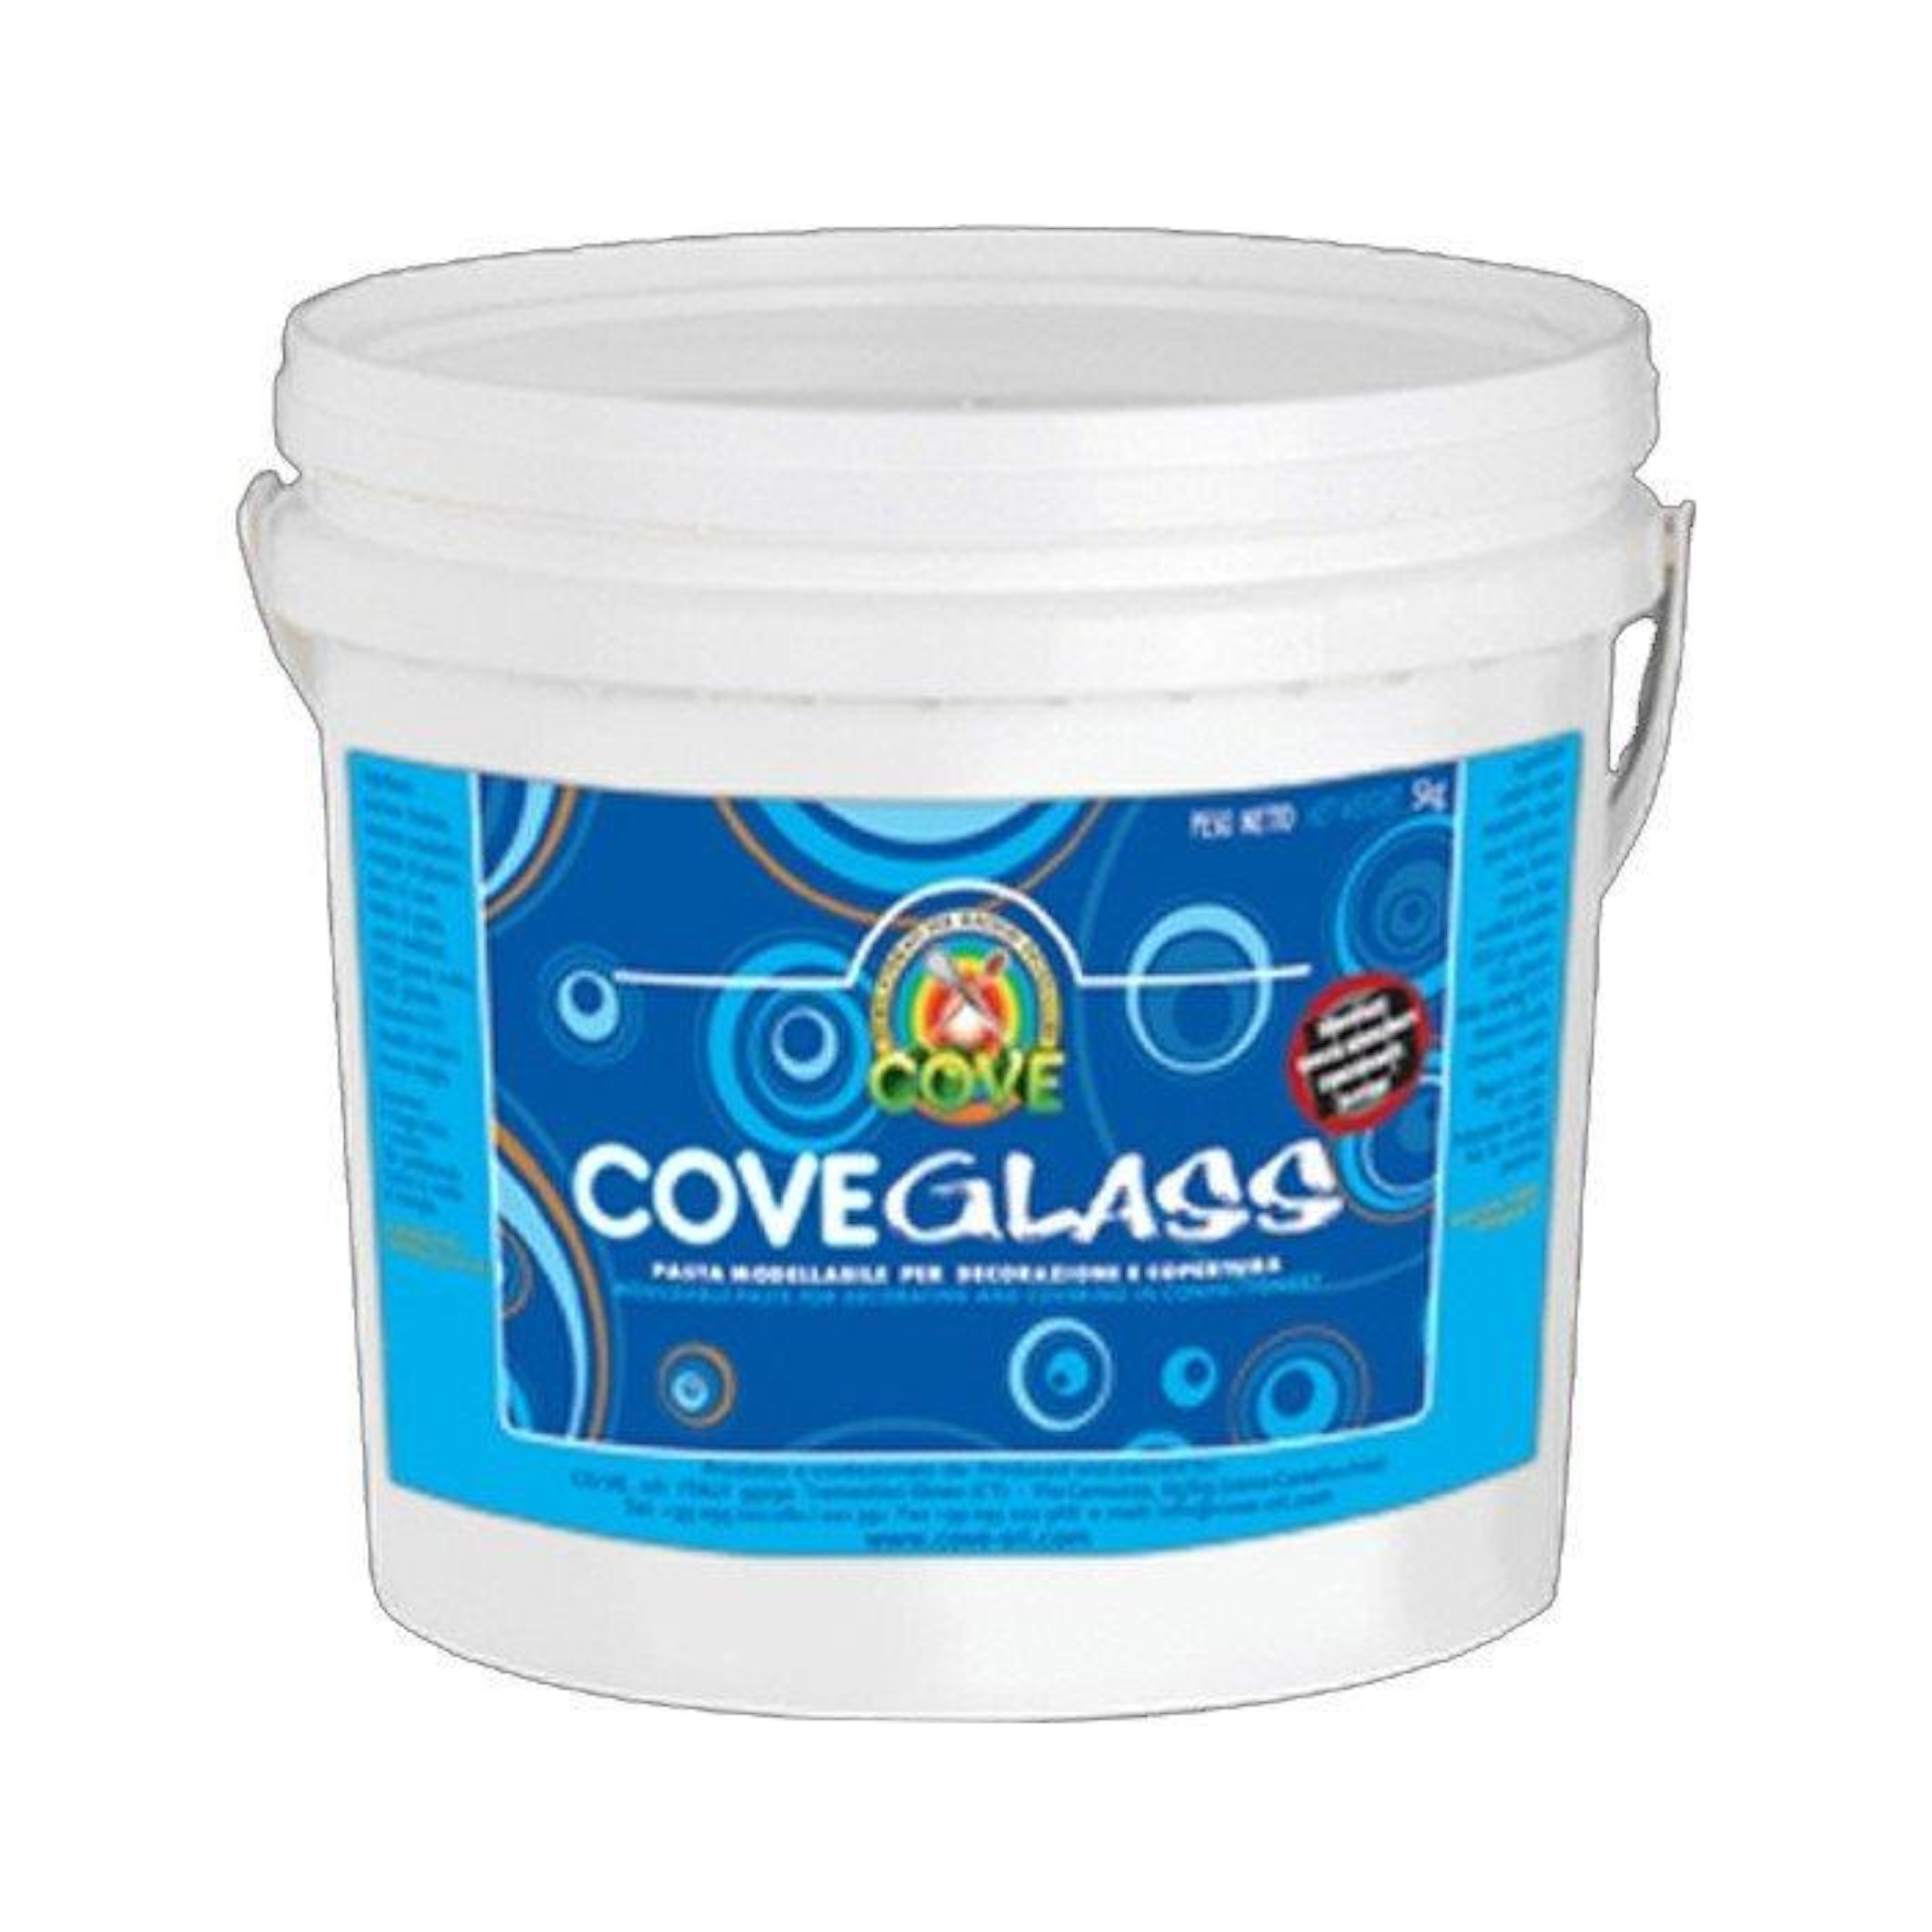 CoveGlass secchio da 4kg